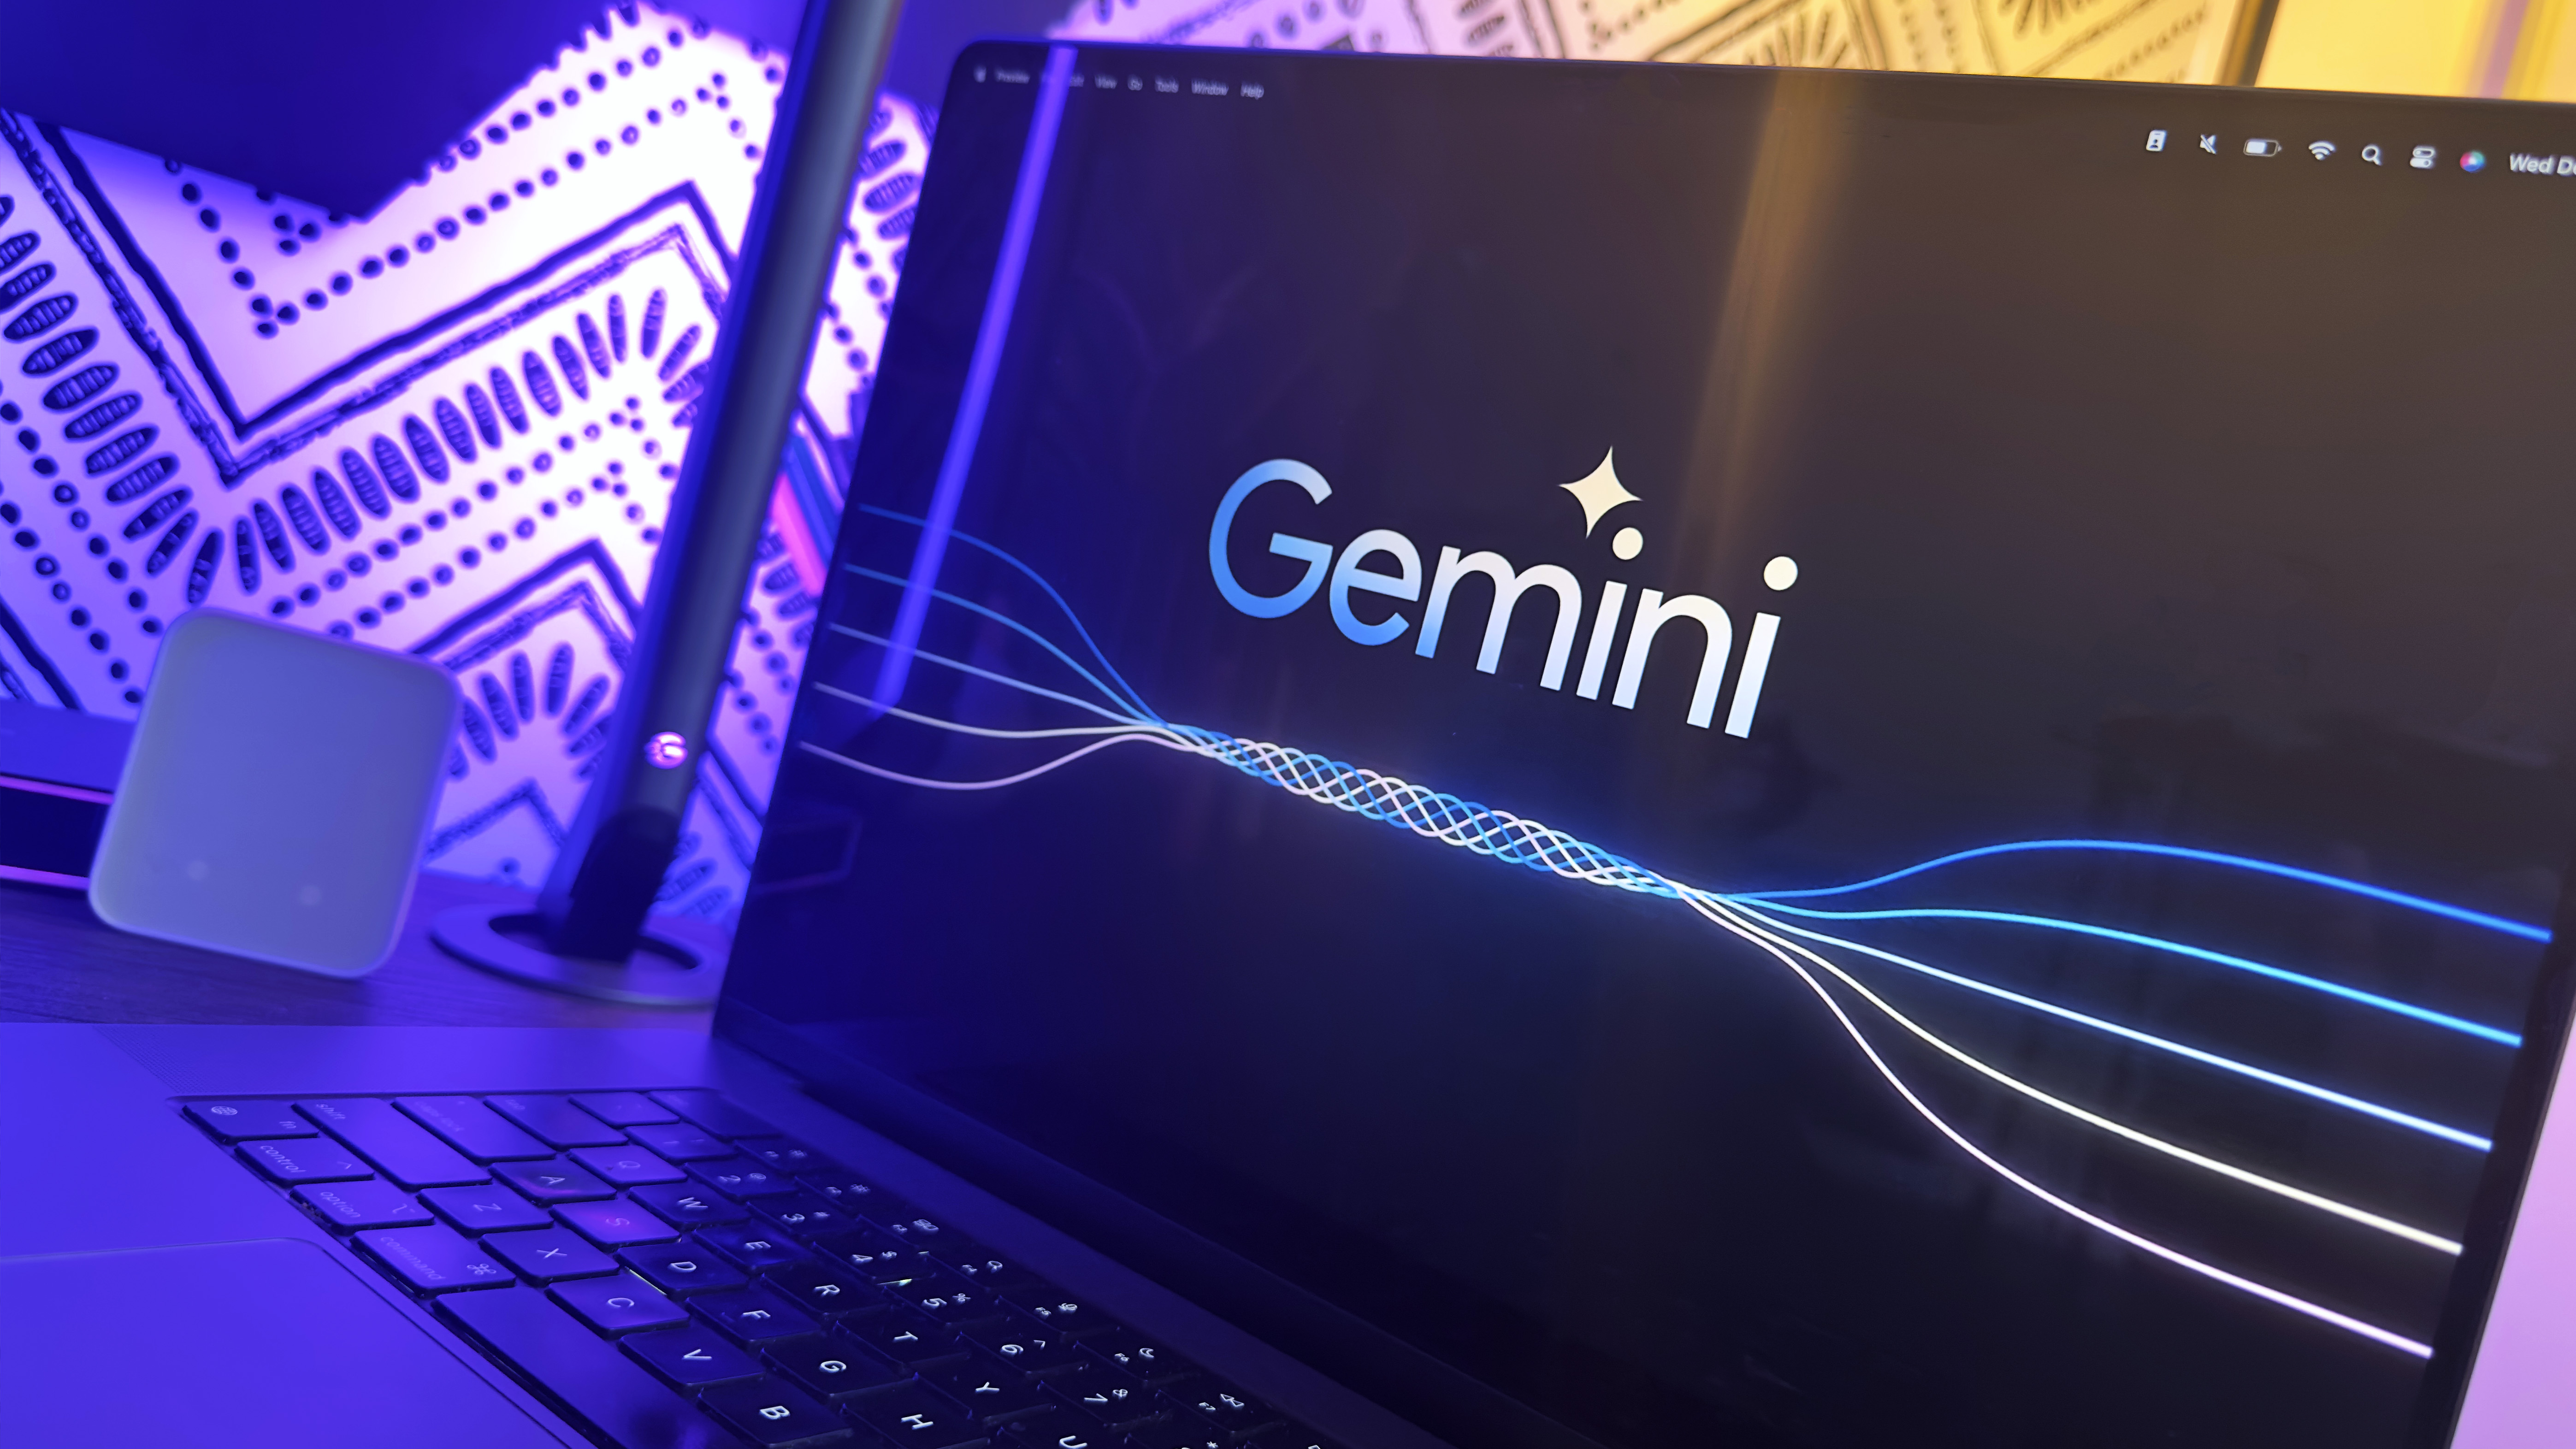 Google suspend la génération d'images de personnes dans Gemini